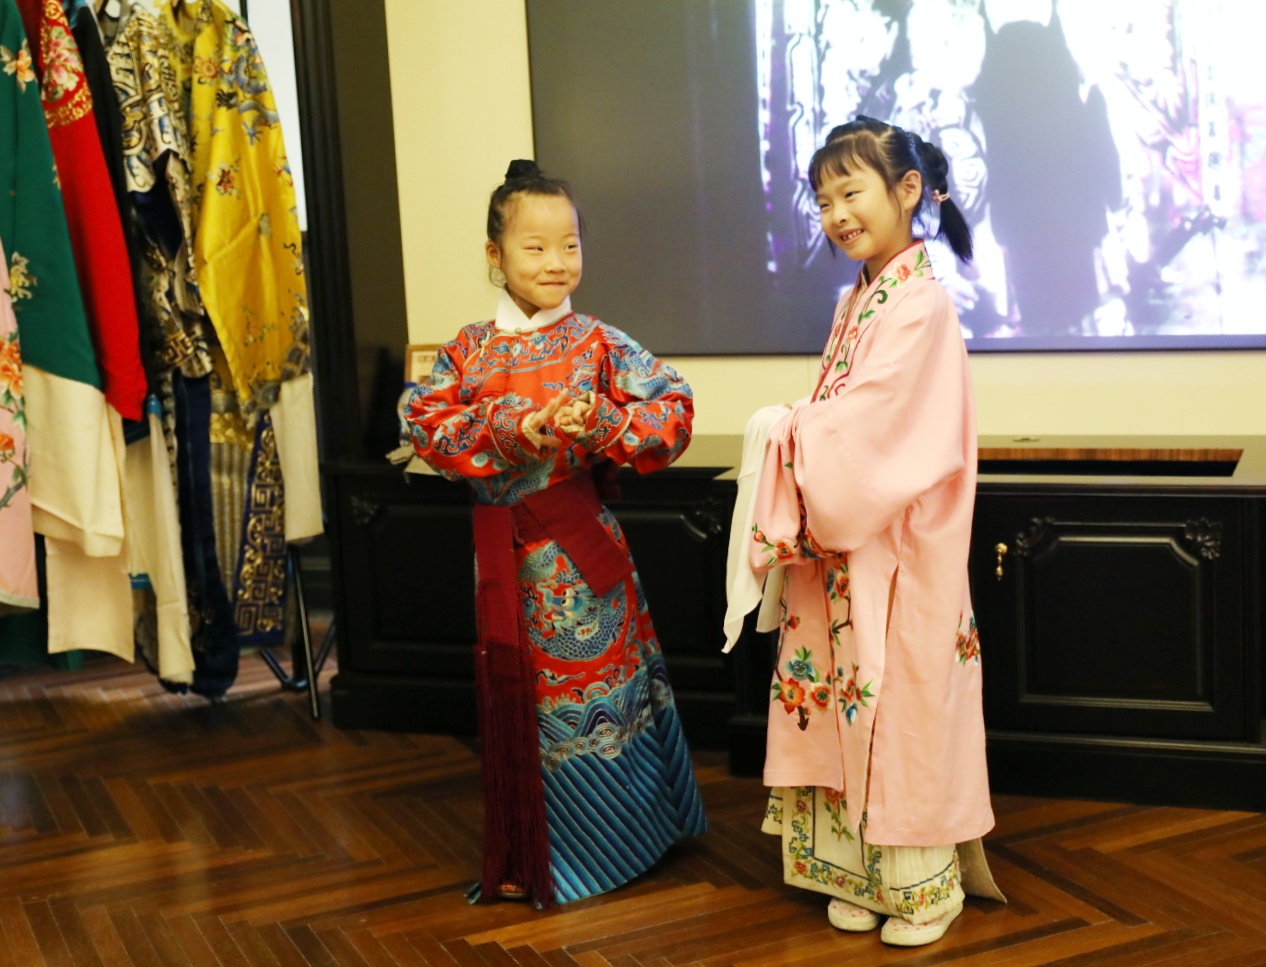 京彩益行人体验京剧文化 让孩子们“同在蓝天下”